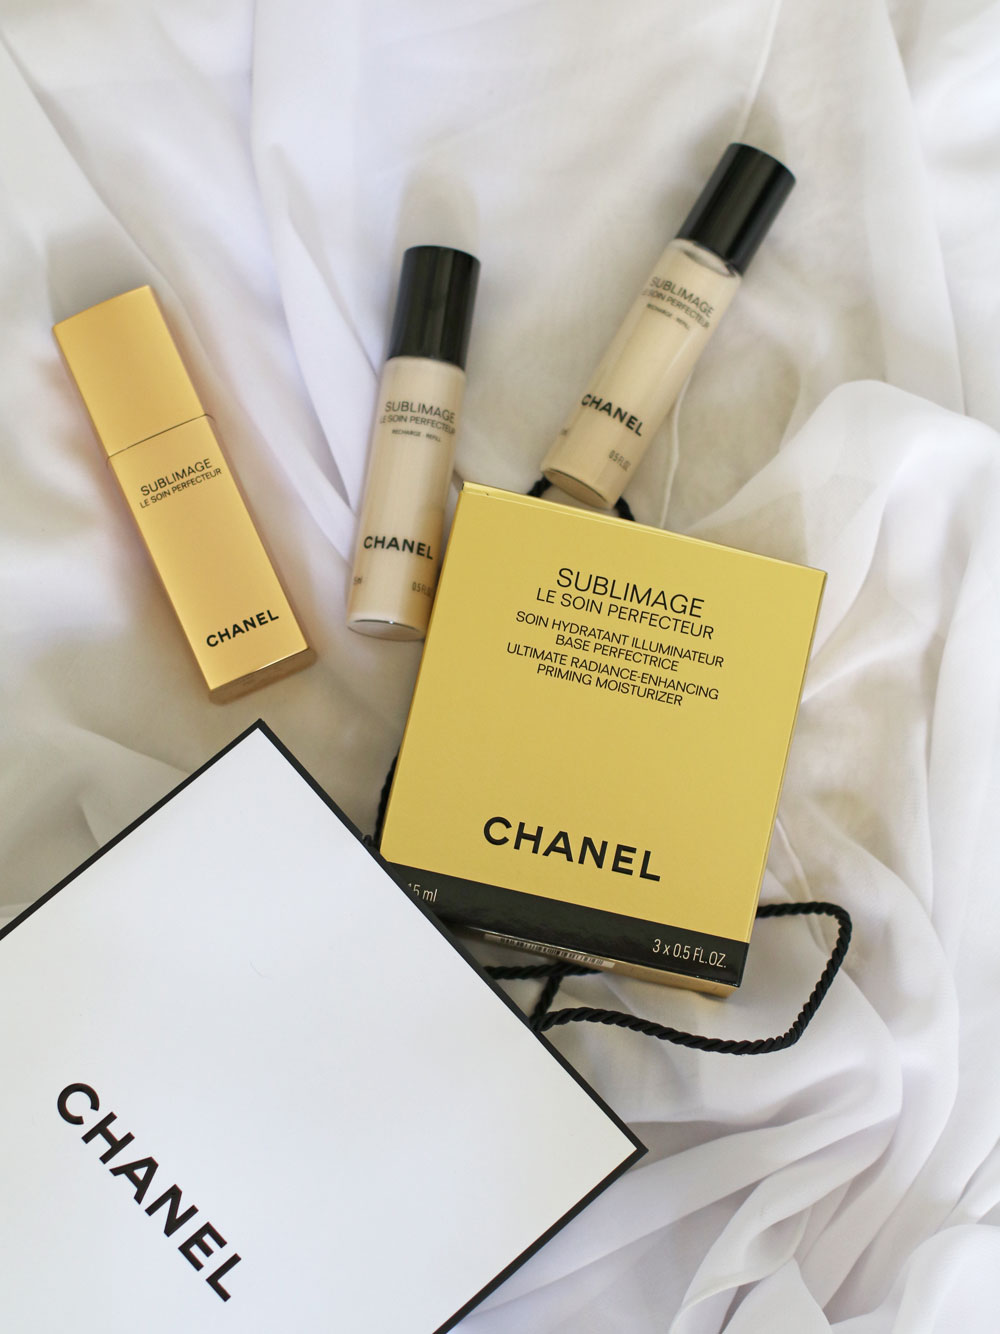 Schnell und effizient: In der Rubrik Beauty-Quickie stellt sonrisa praktische Kosmetik-Artikel vor, die dank multifunktionalem Konzept ein Maxiumum an Wirkung ermöglichen - wie etwa dem neuen Chanel Sublimage Le Soin Perfecteur.